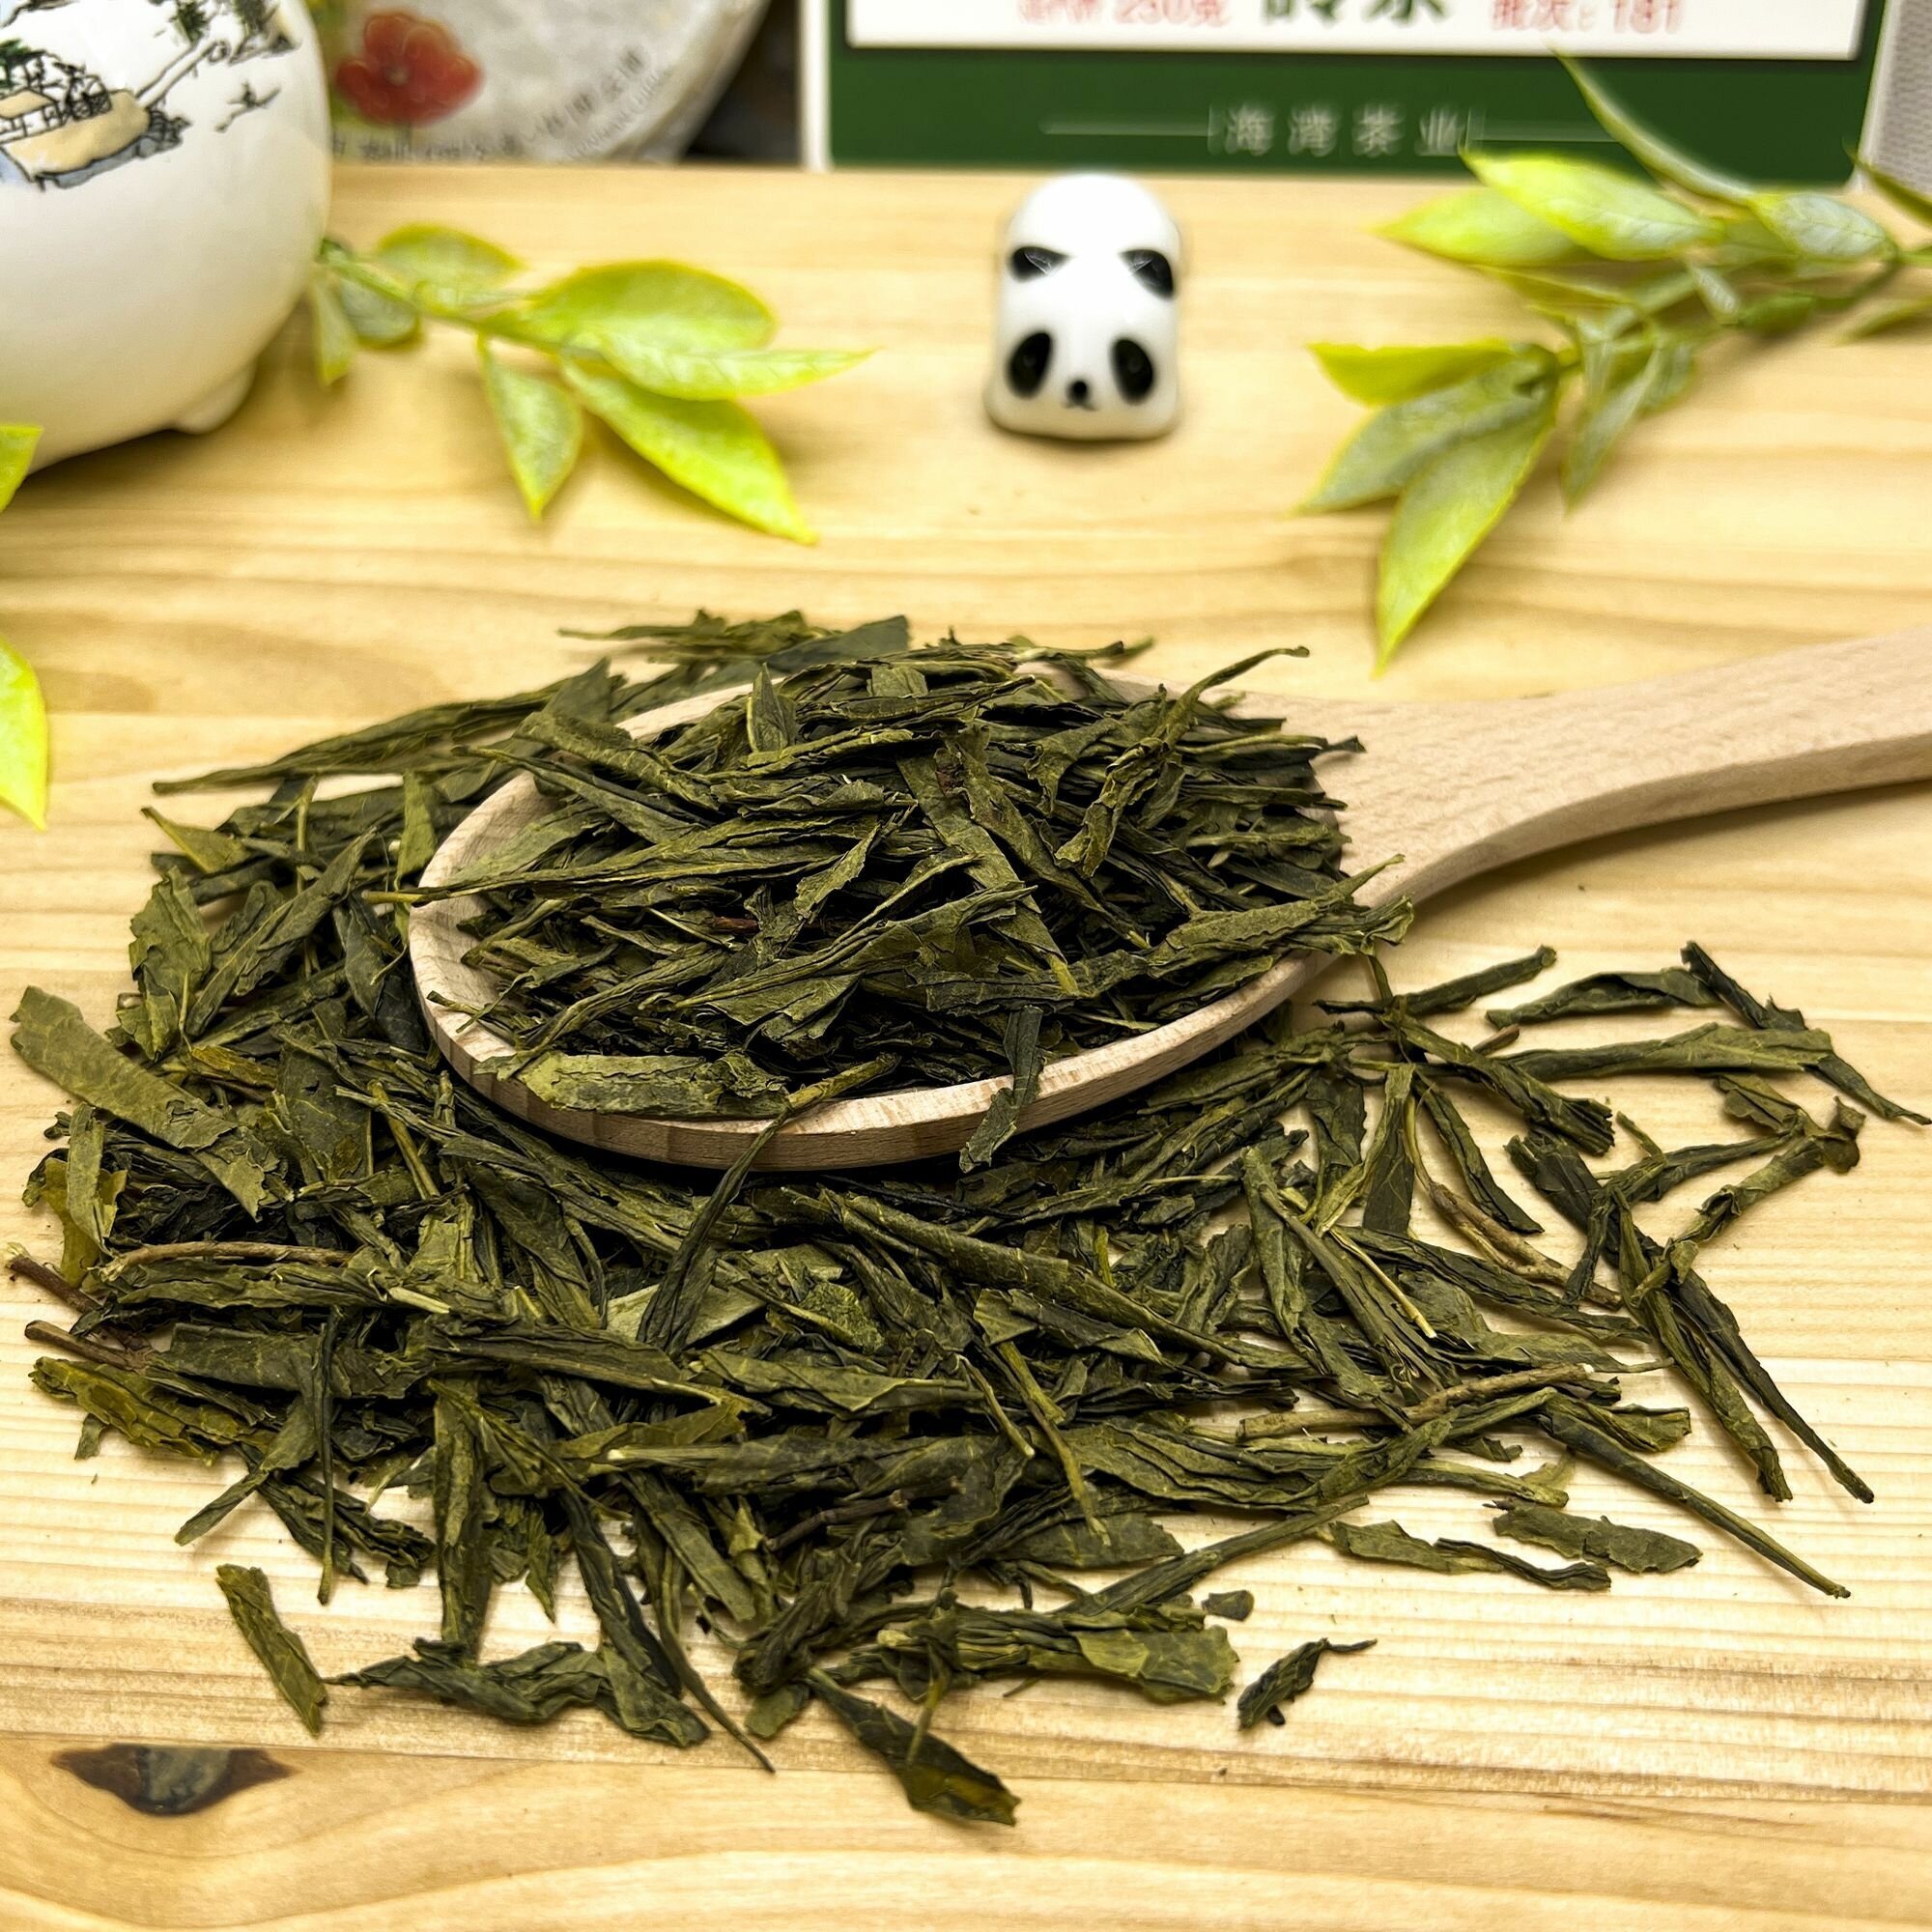 Китайский зеленый чай без добавок Сенча (кат. B) Полезный чай / HEALTHY TEA, 150 г